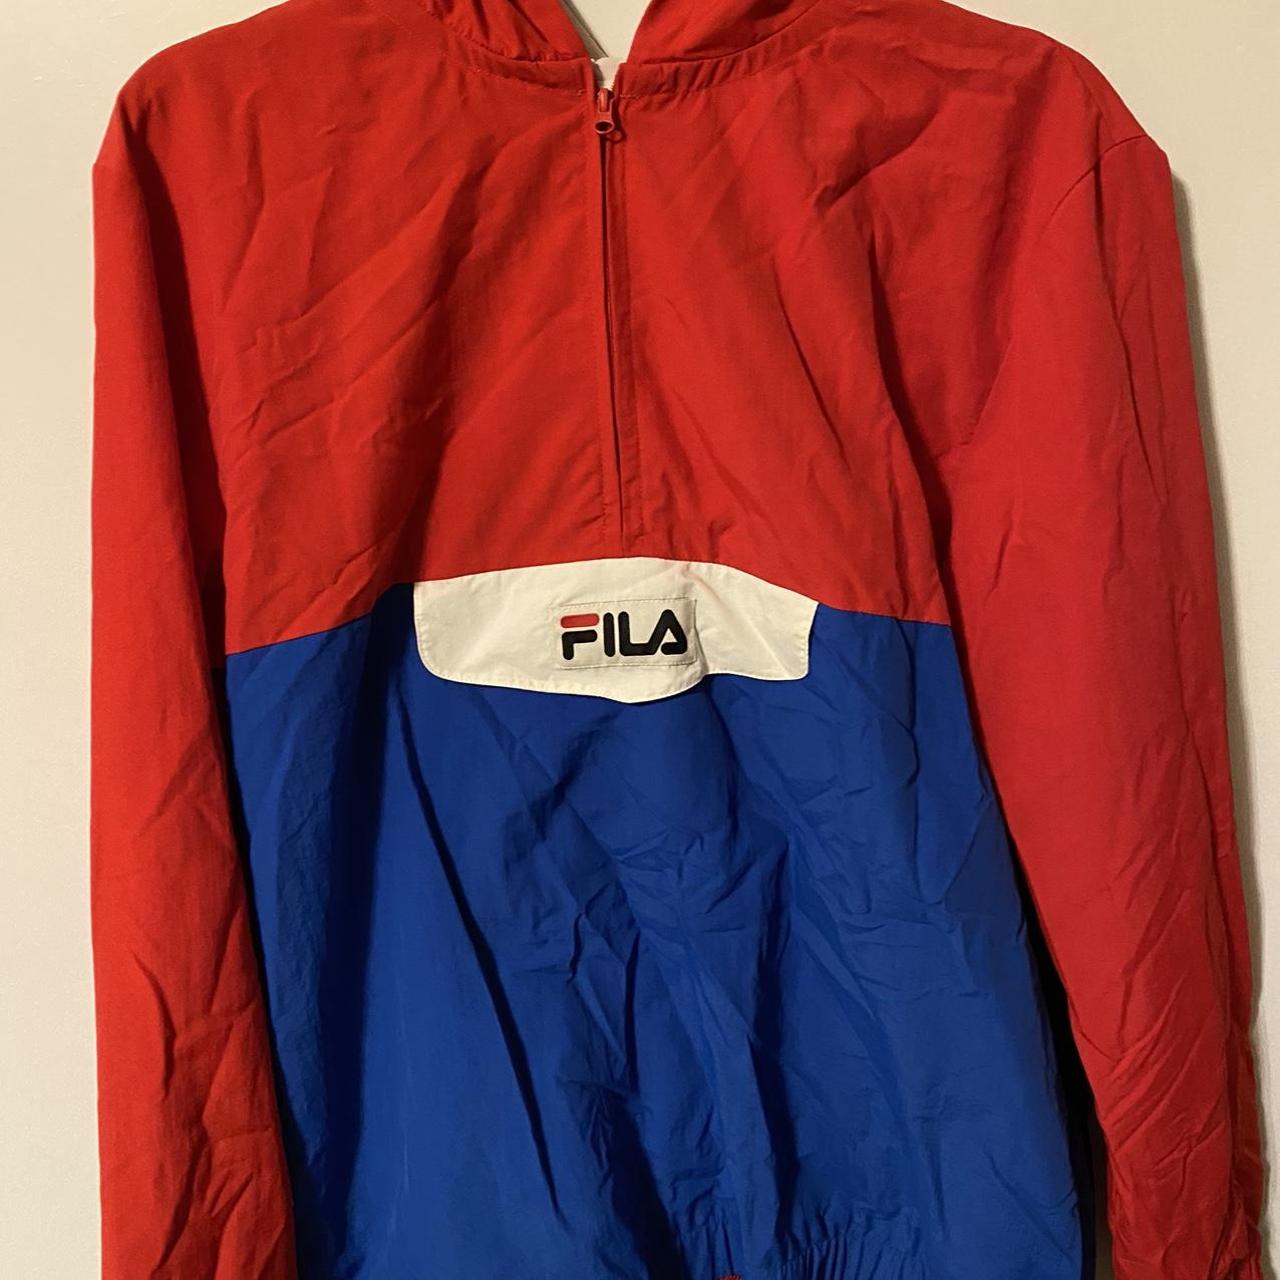 Fila Men's Red and Blue Jacket | Depop